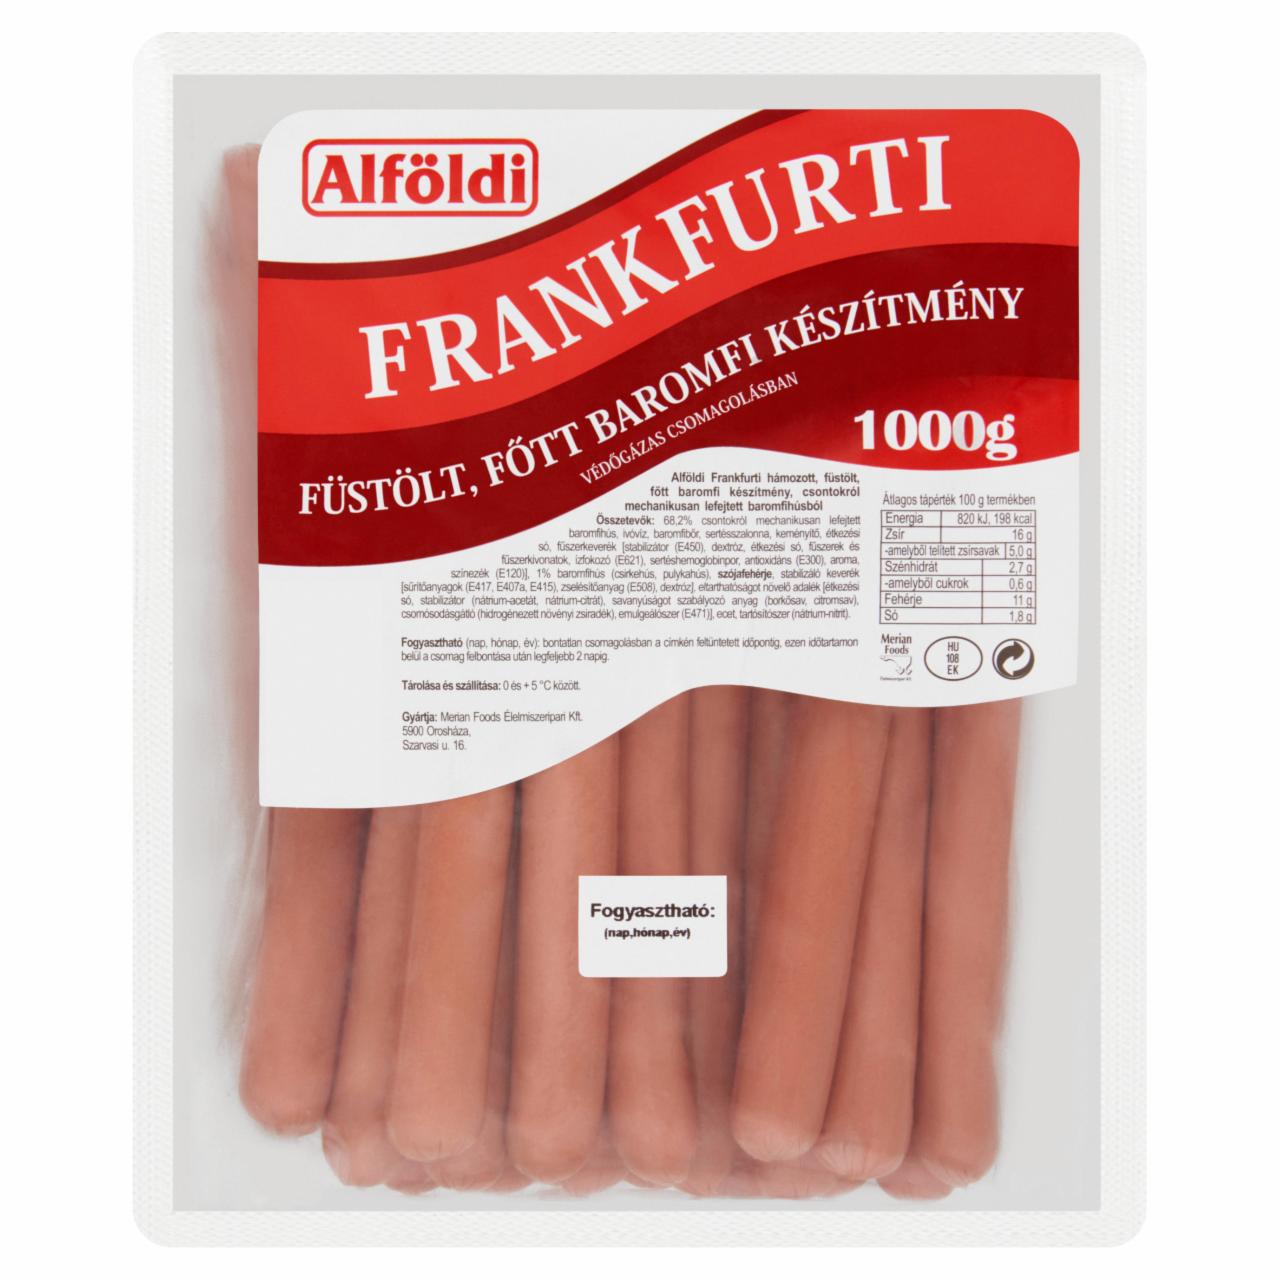 Képek - Alföldi Frankfurti füstölt, főtt baromfi készítmény 1000 g